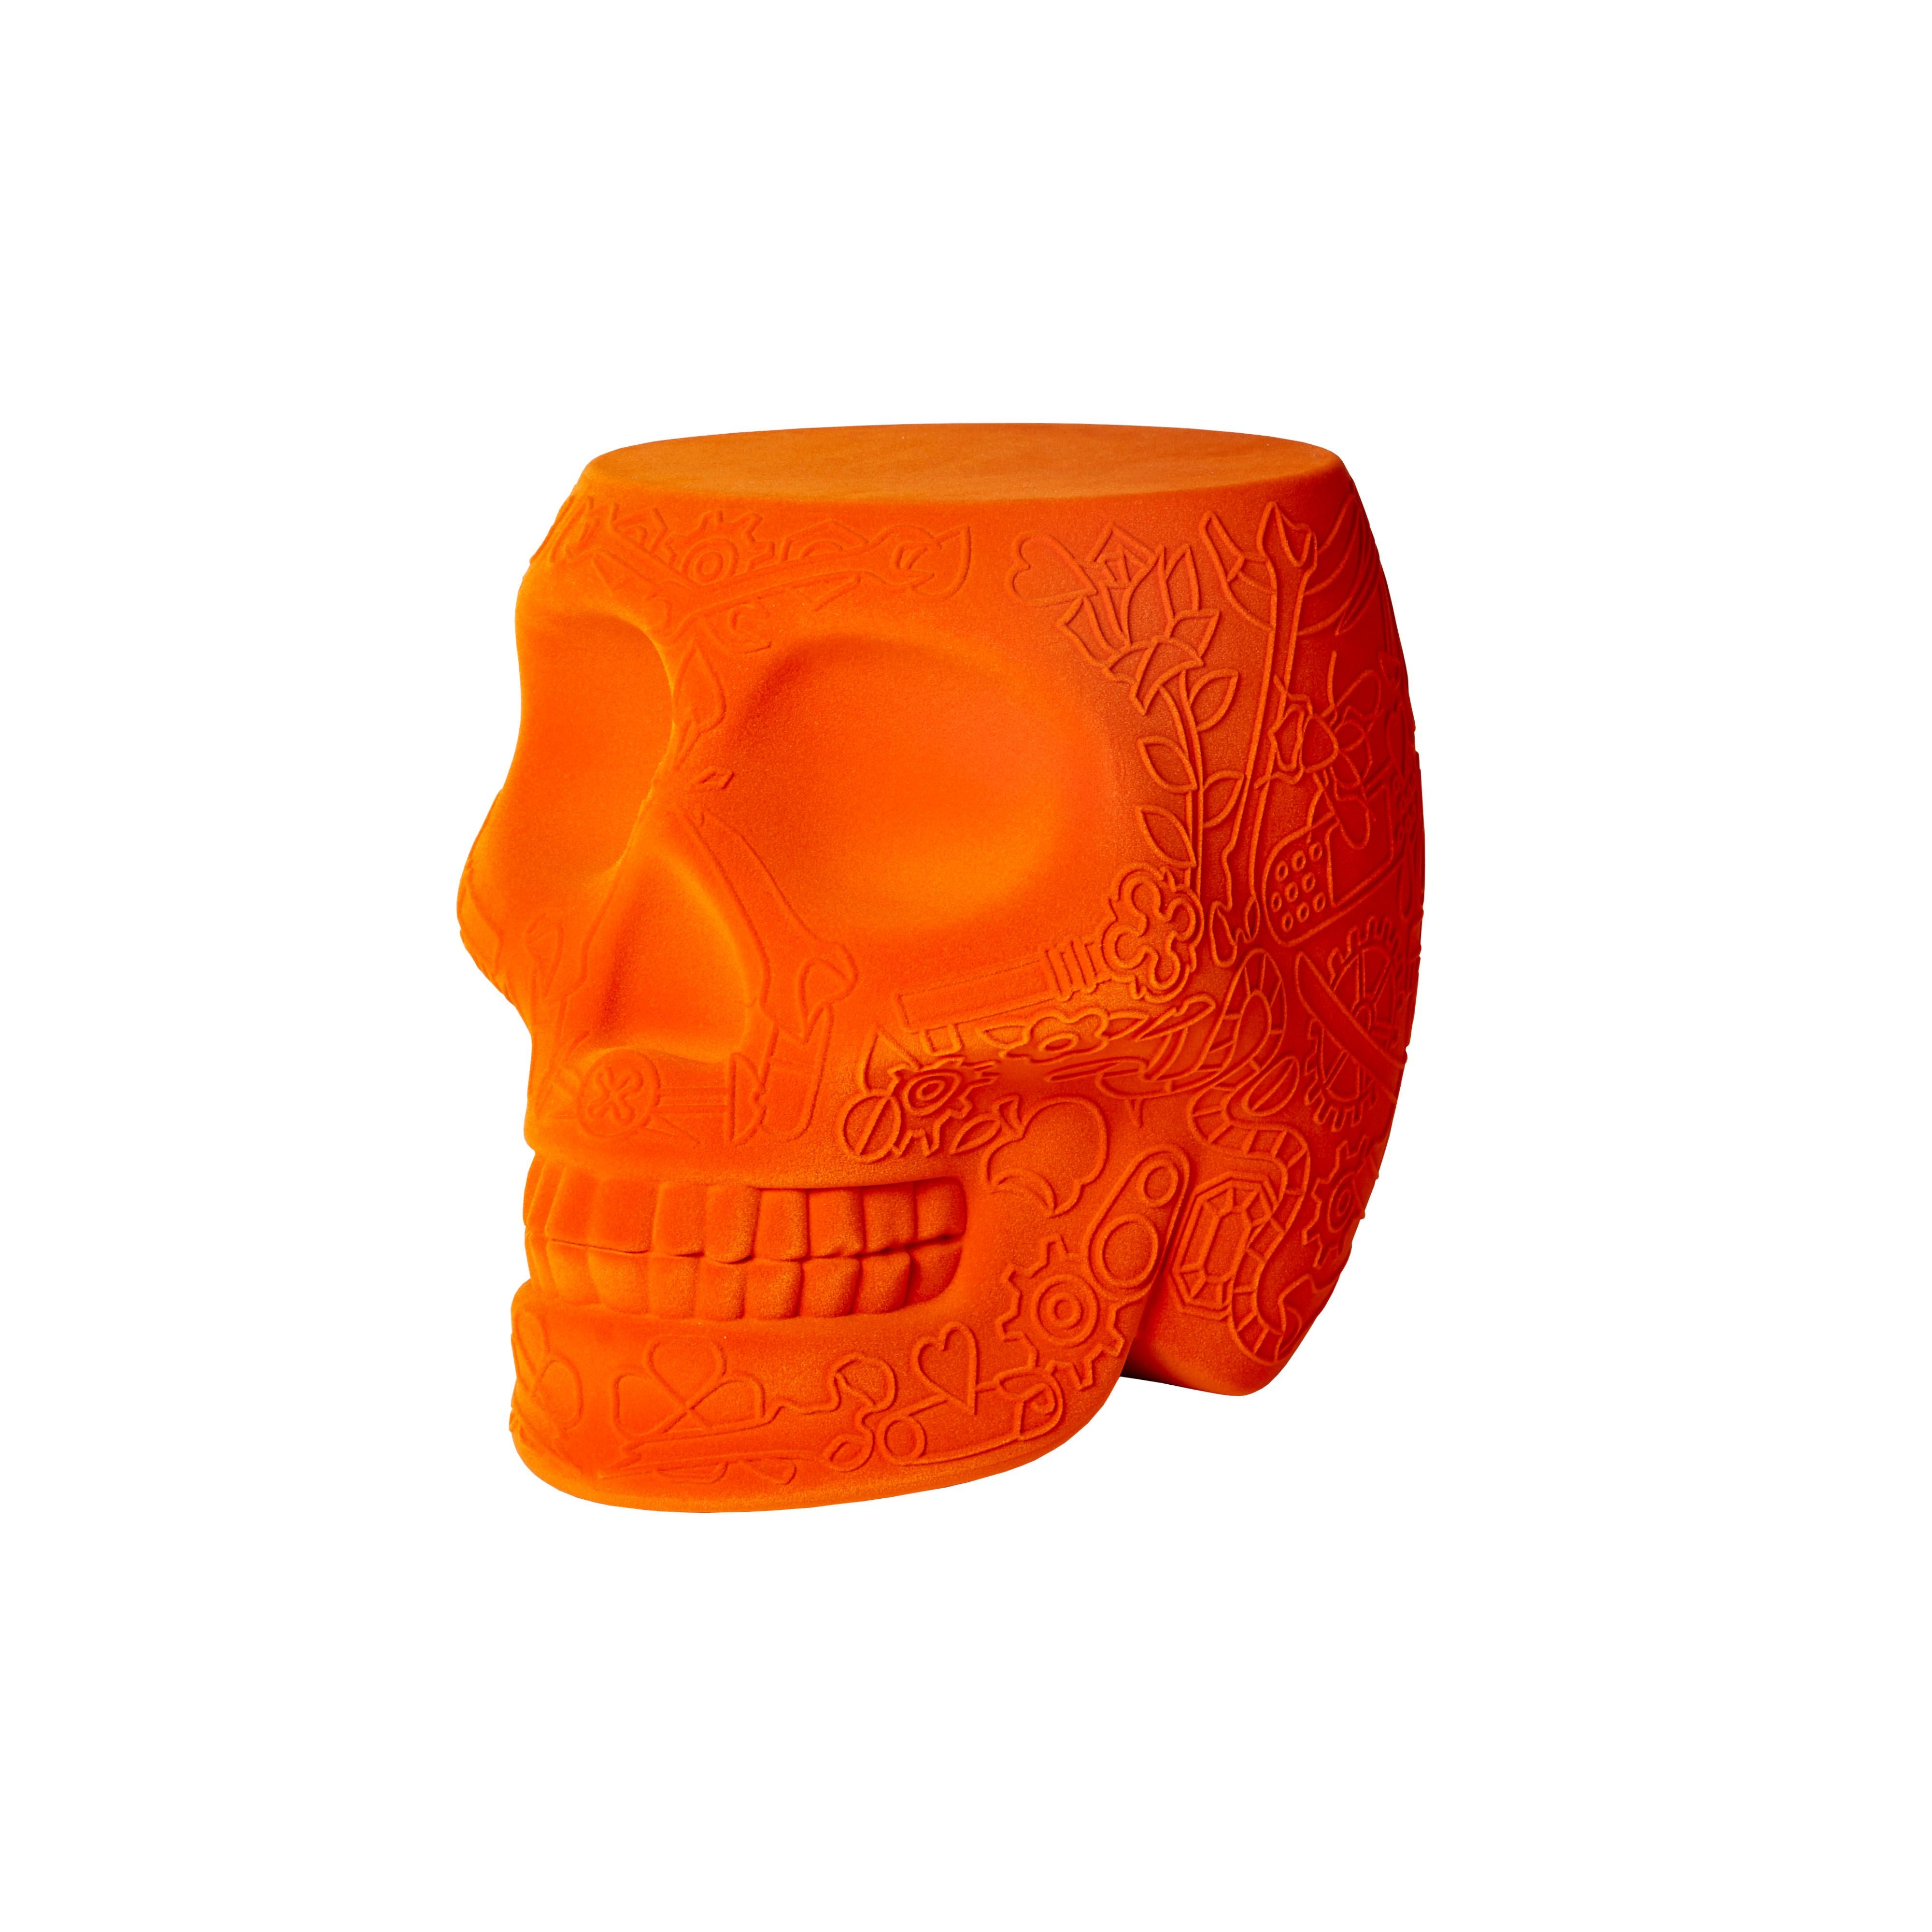 Orange Modern Velvet Mexican Calavera Skull Stool or Side Table By Studio Job 2